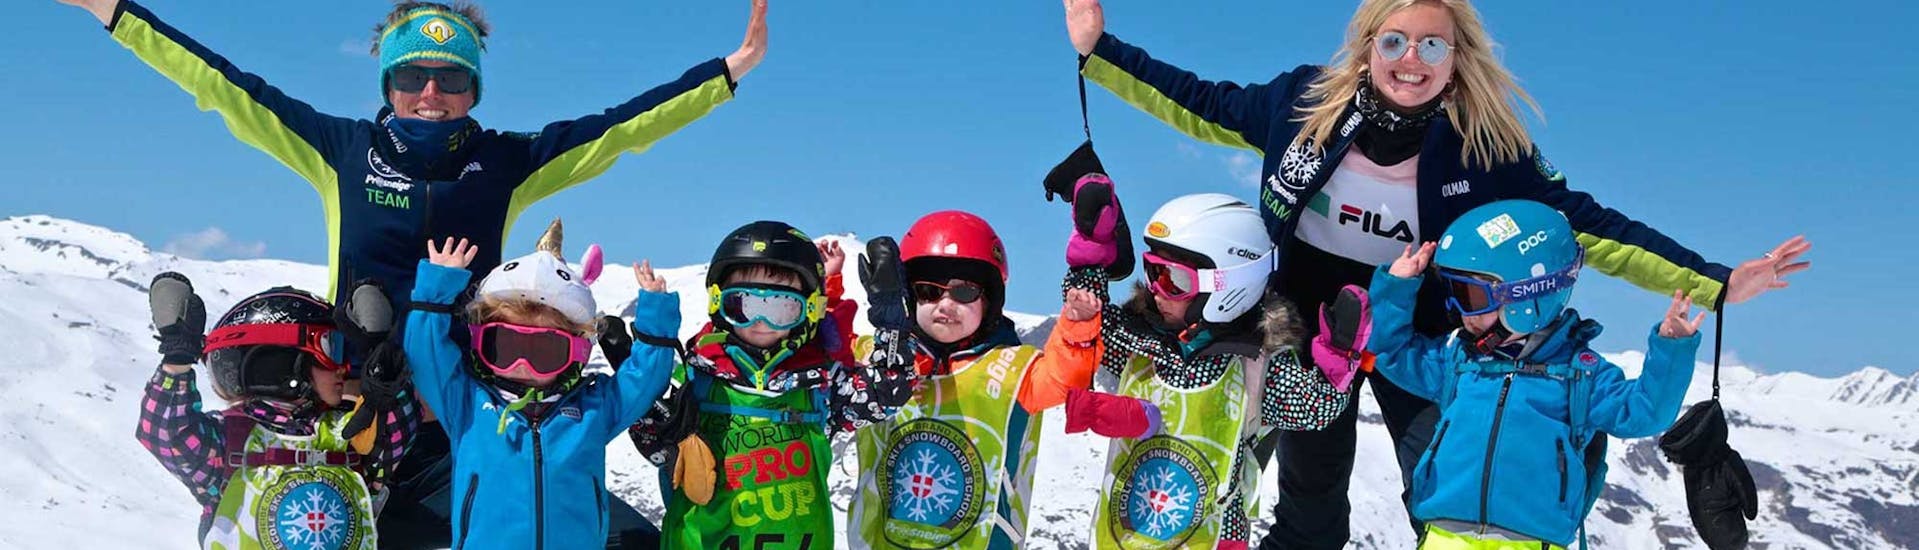 Lezioni di sci per bambini (5-13 anni) - Max. 8 per gruppo.